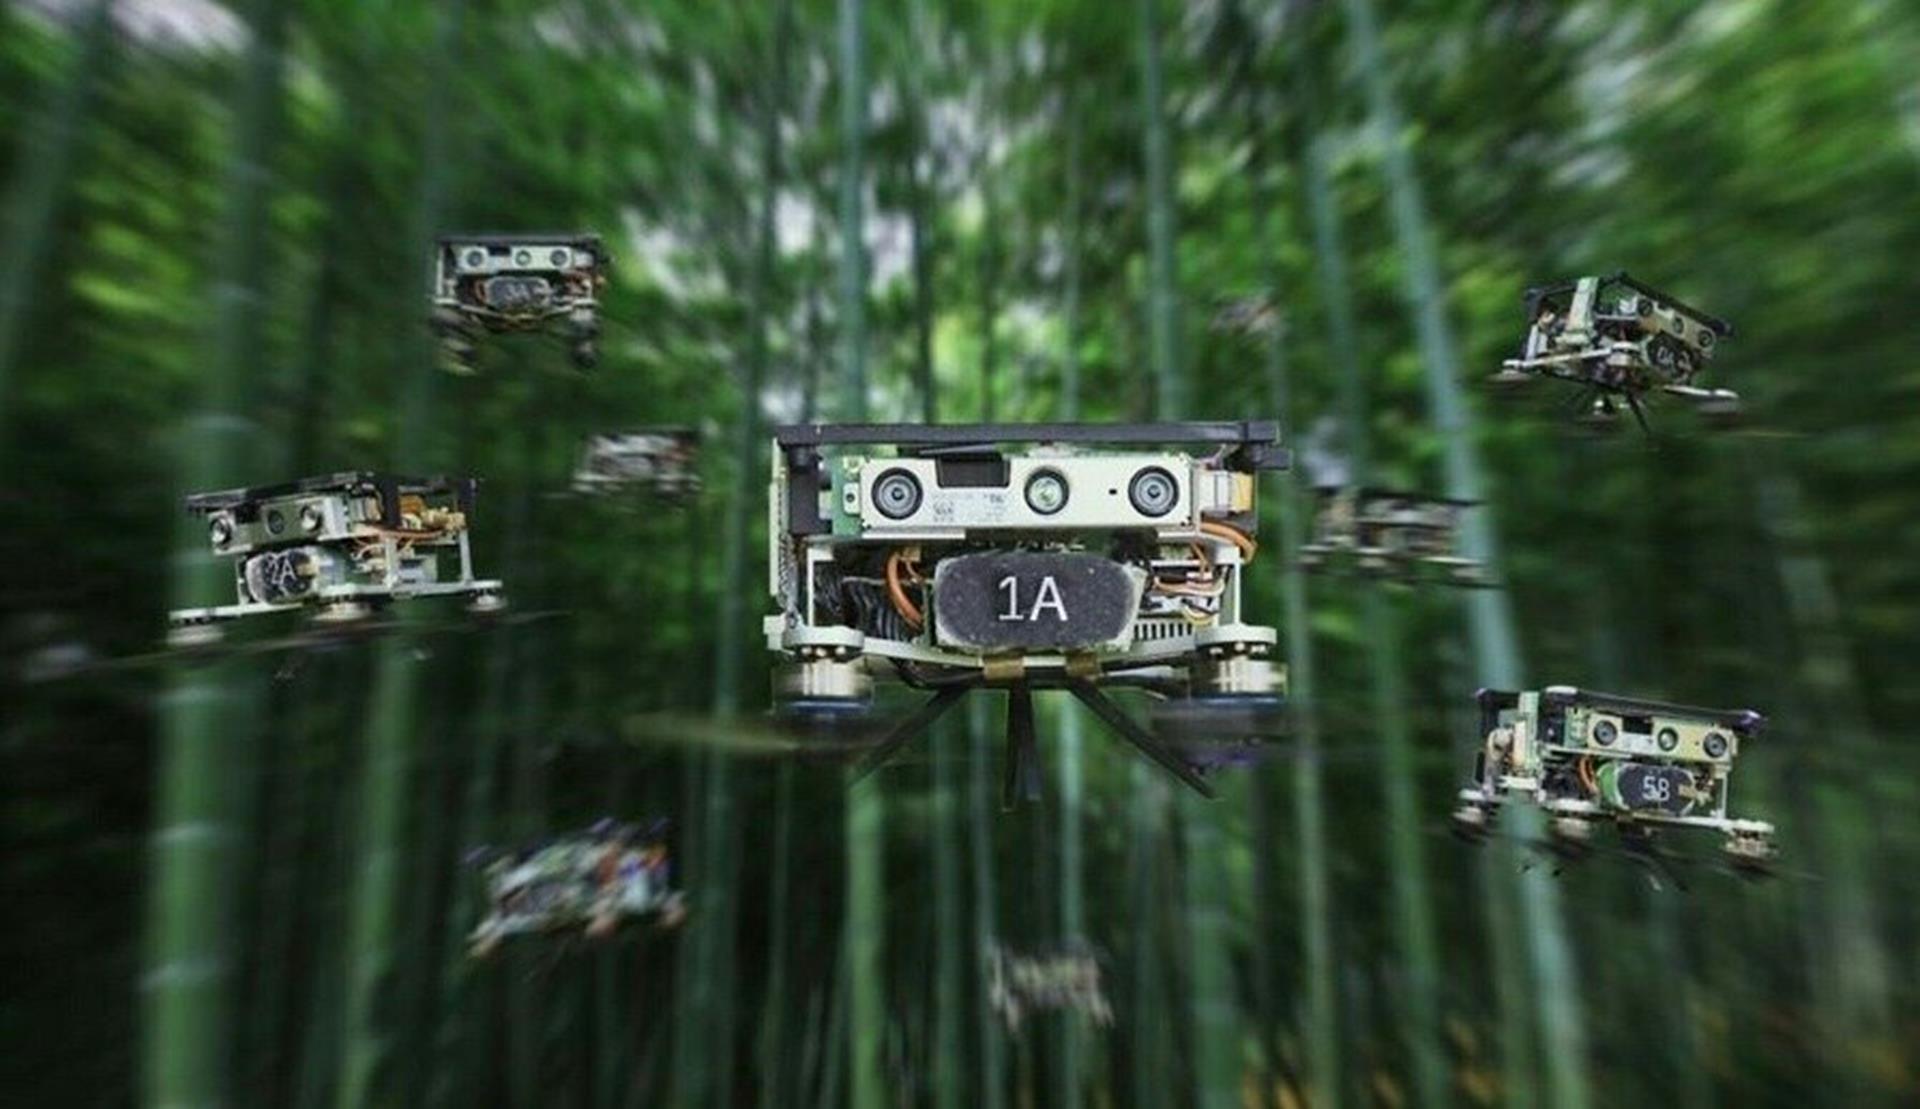 Obejrzyjcie jak rój chińskich dronów przemierza gęsty bambusowy las